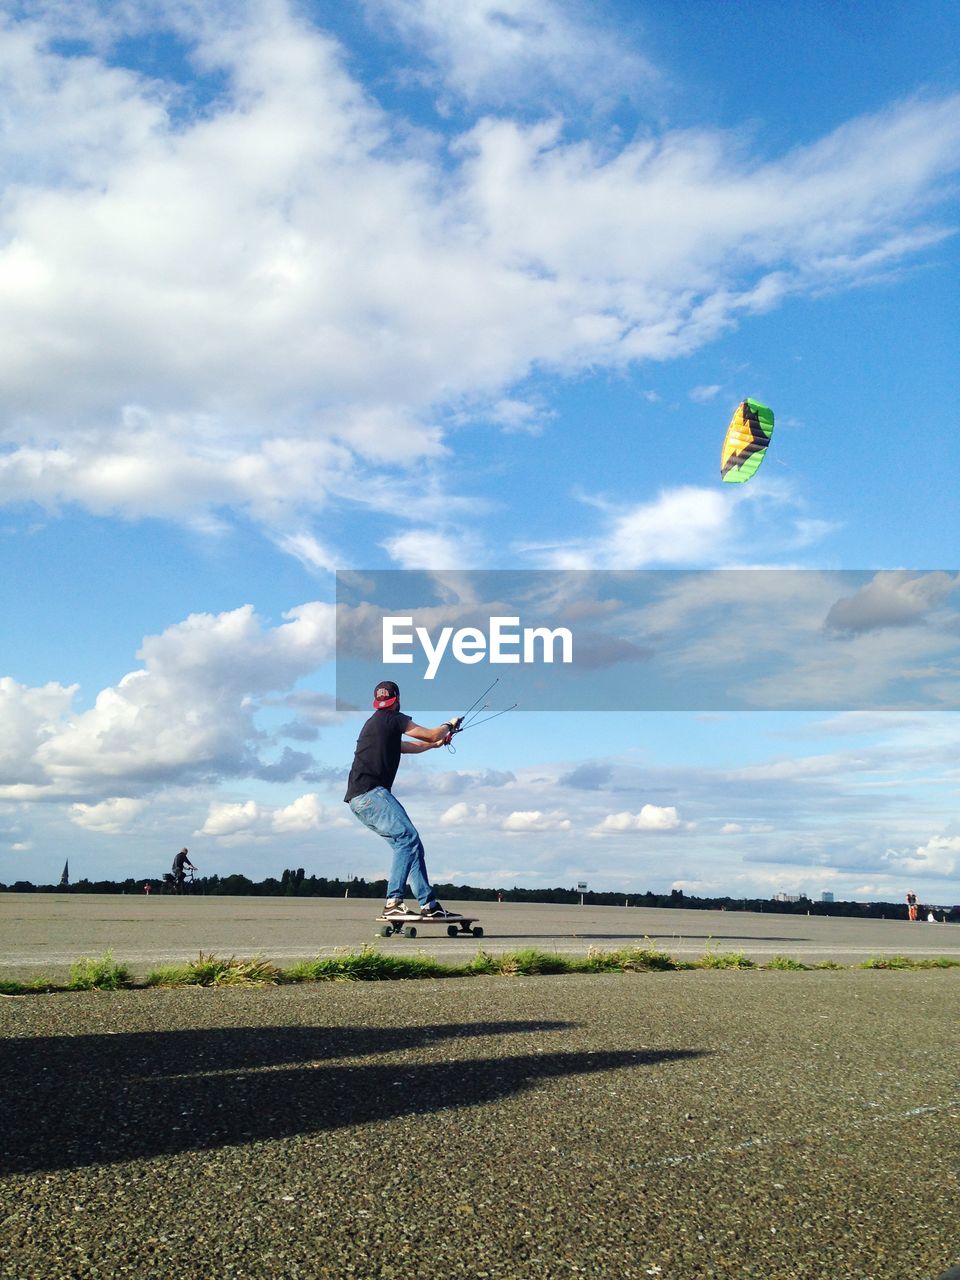 Kite boarding